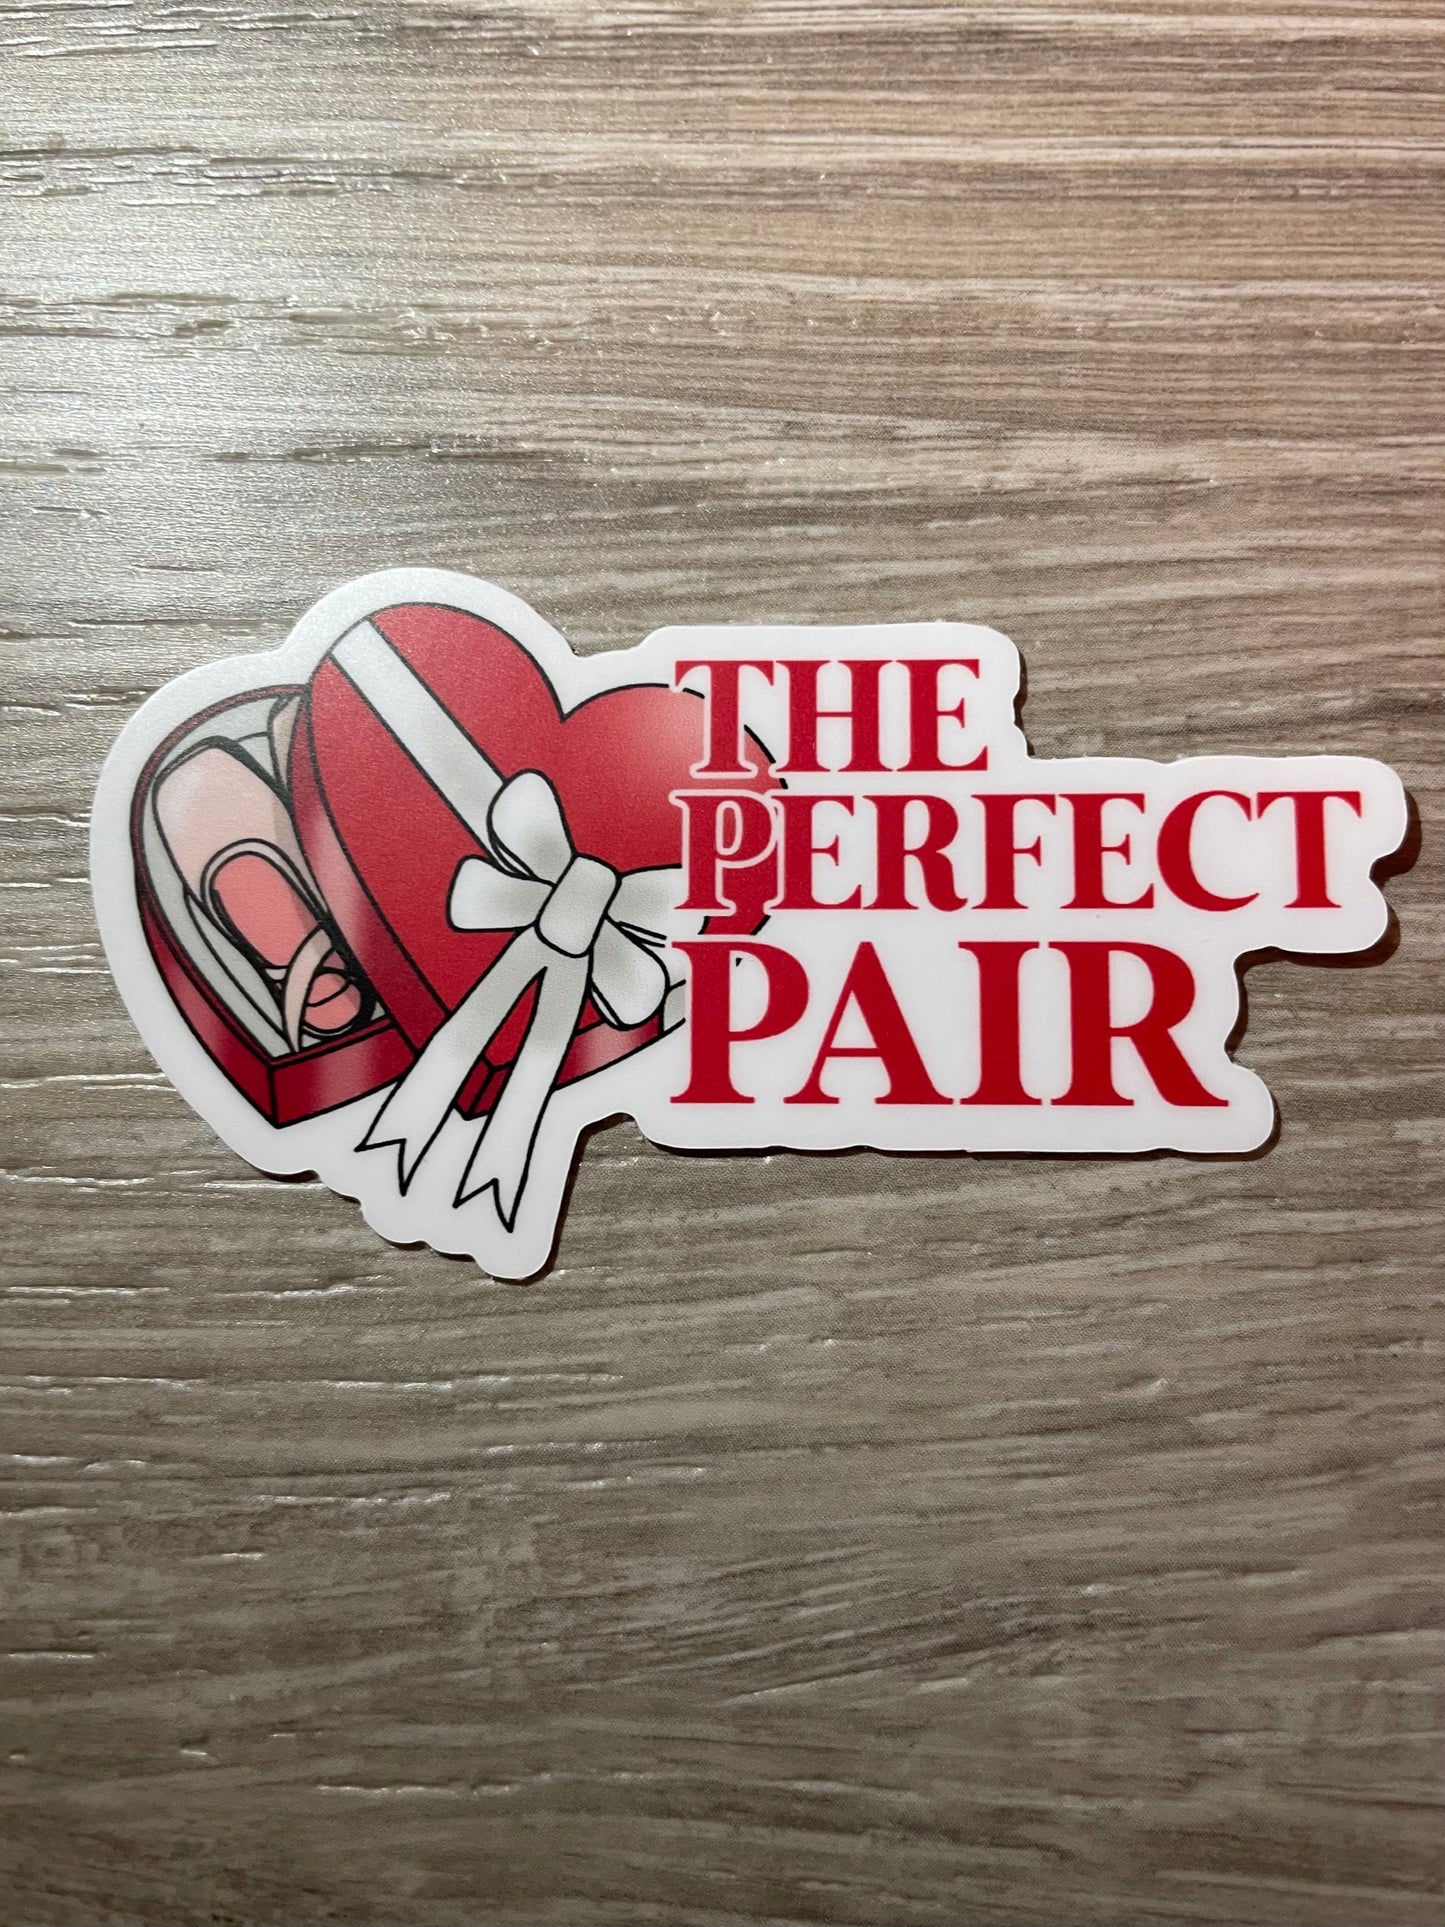 The Perfect Pair Dance Valentine Vinyl Sticker, 3" x 1.7"